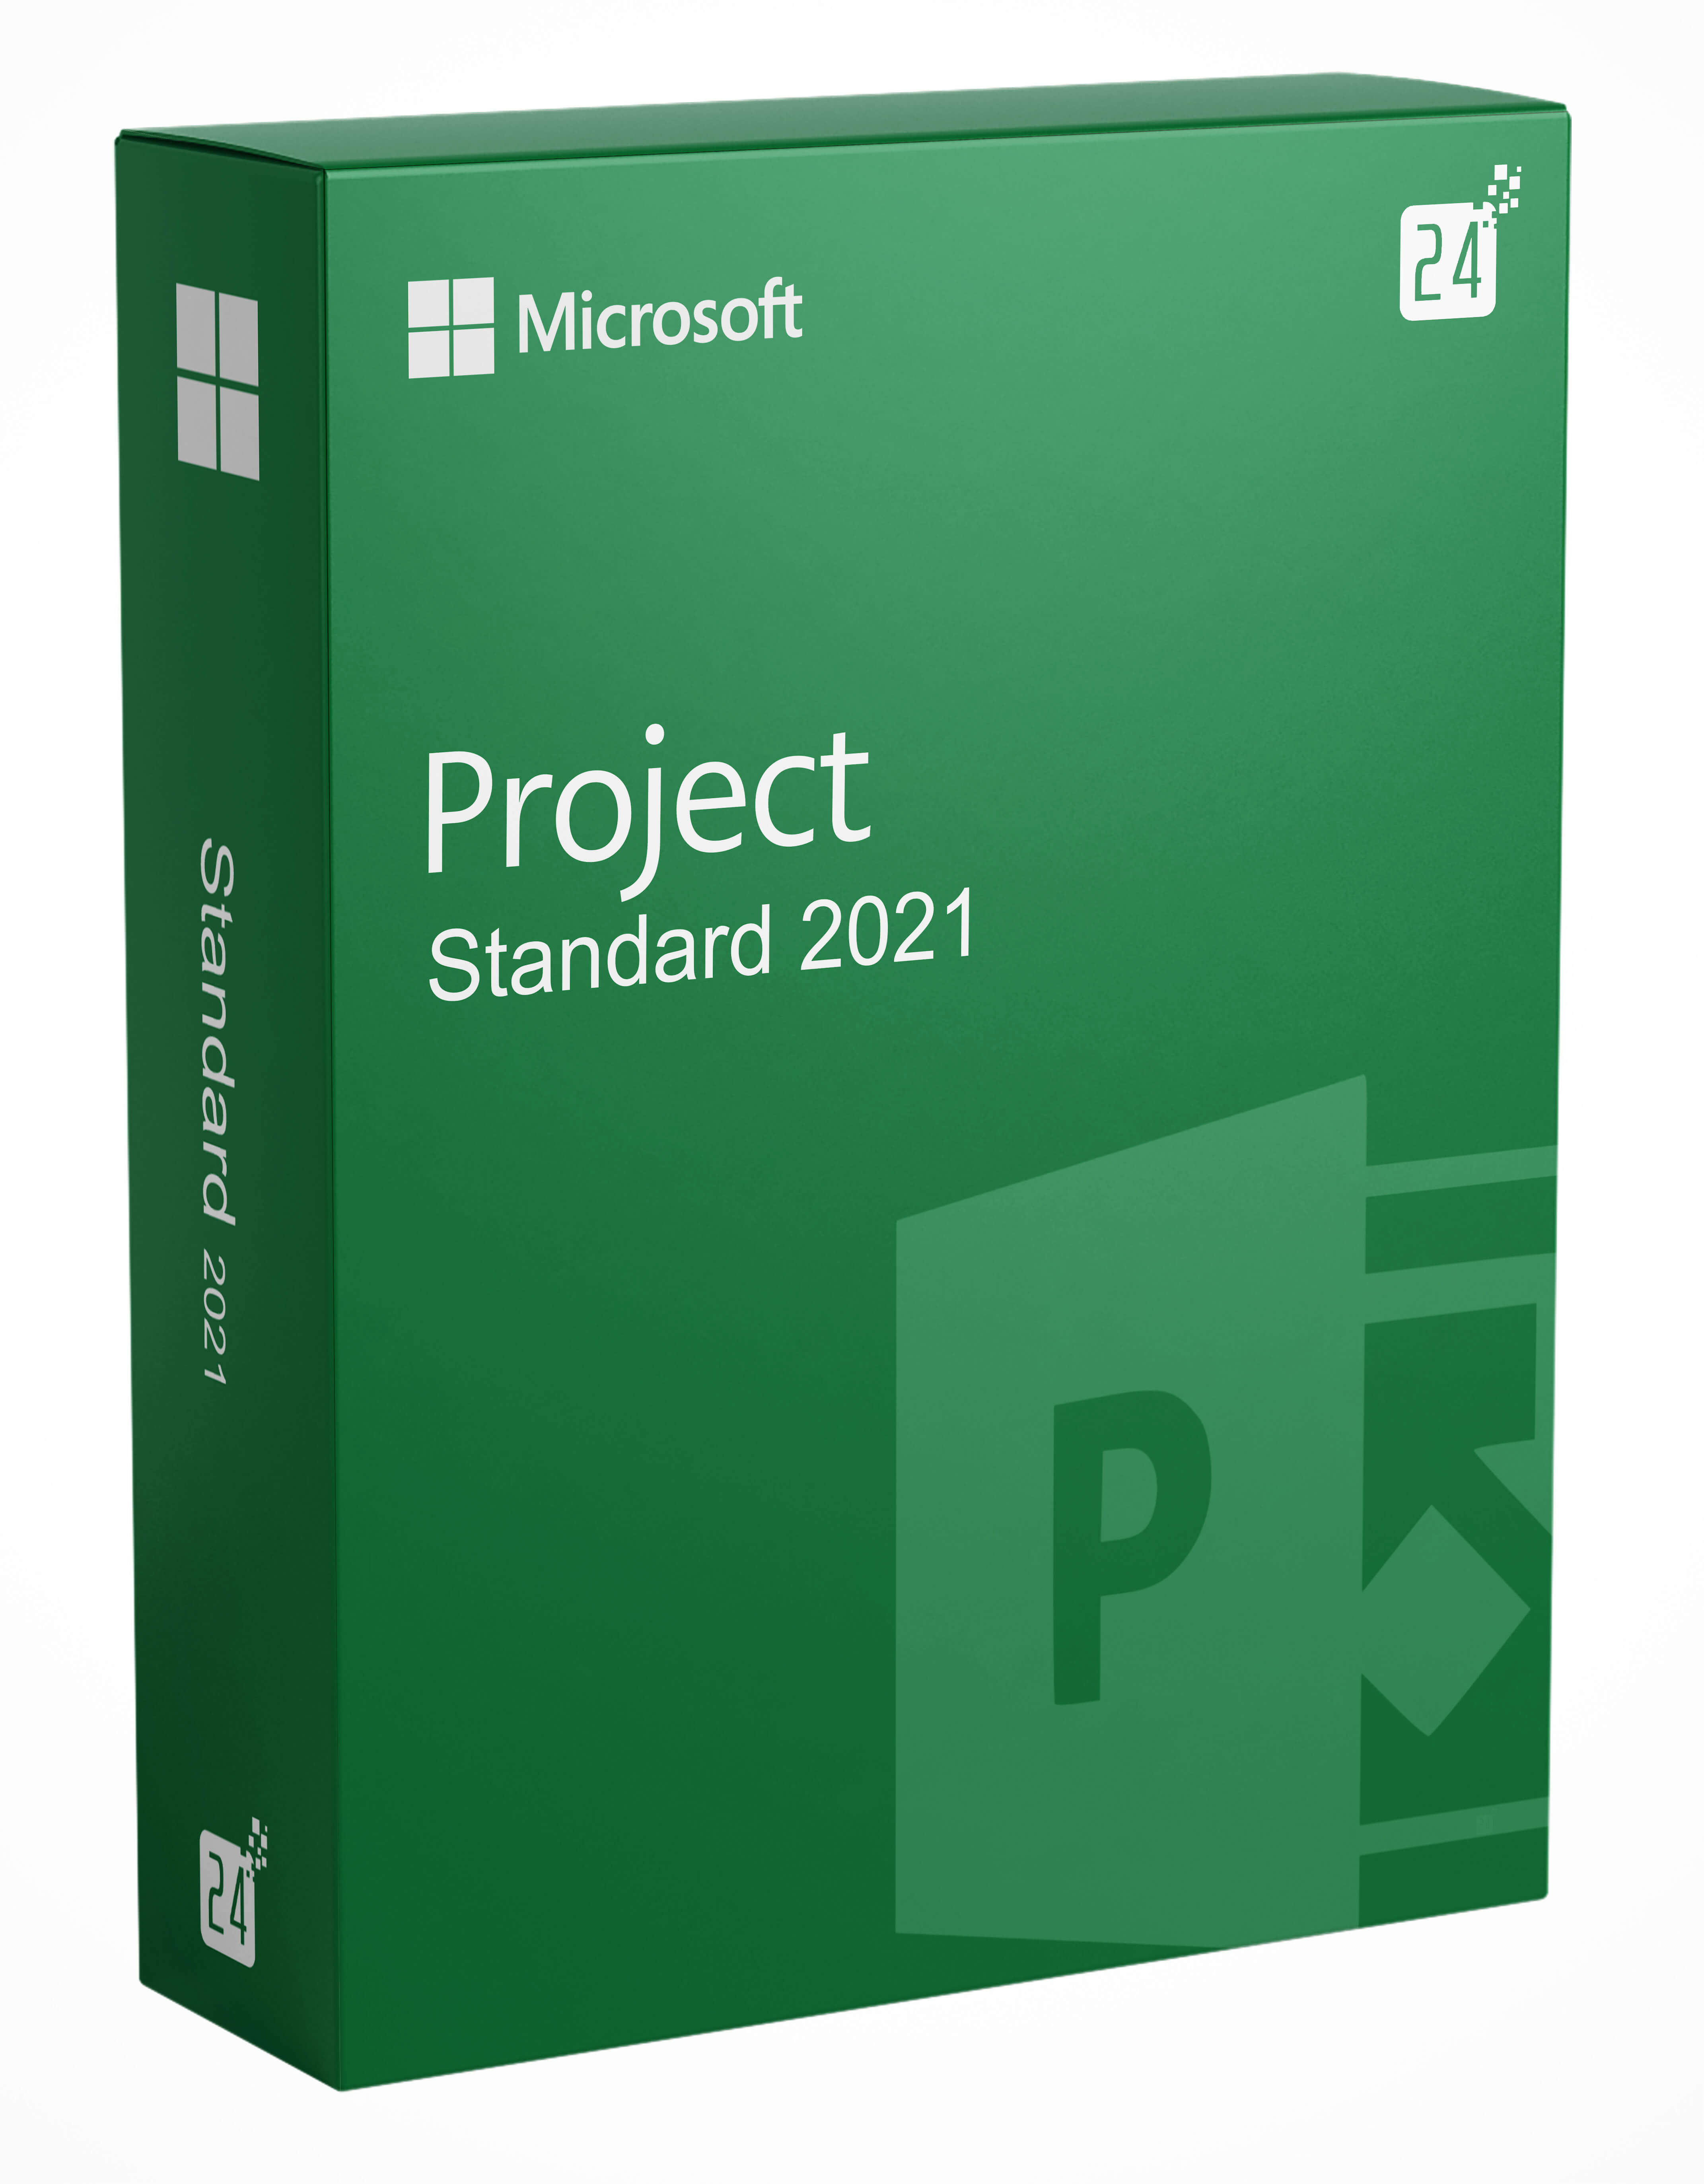 Projecto Microsoft 2021